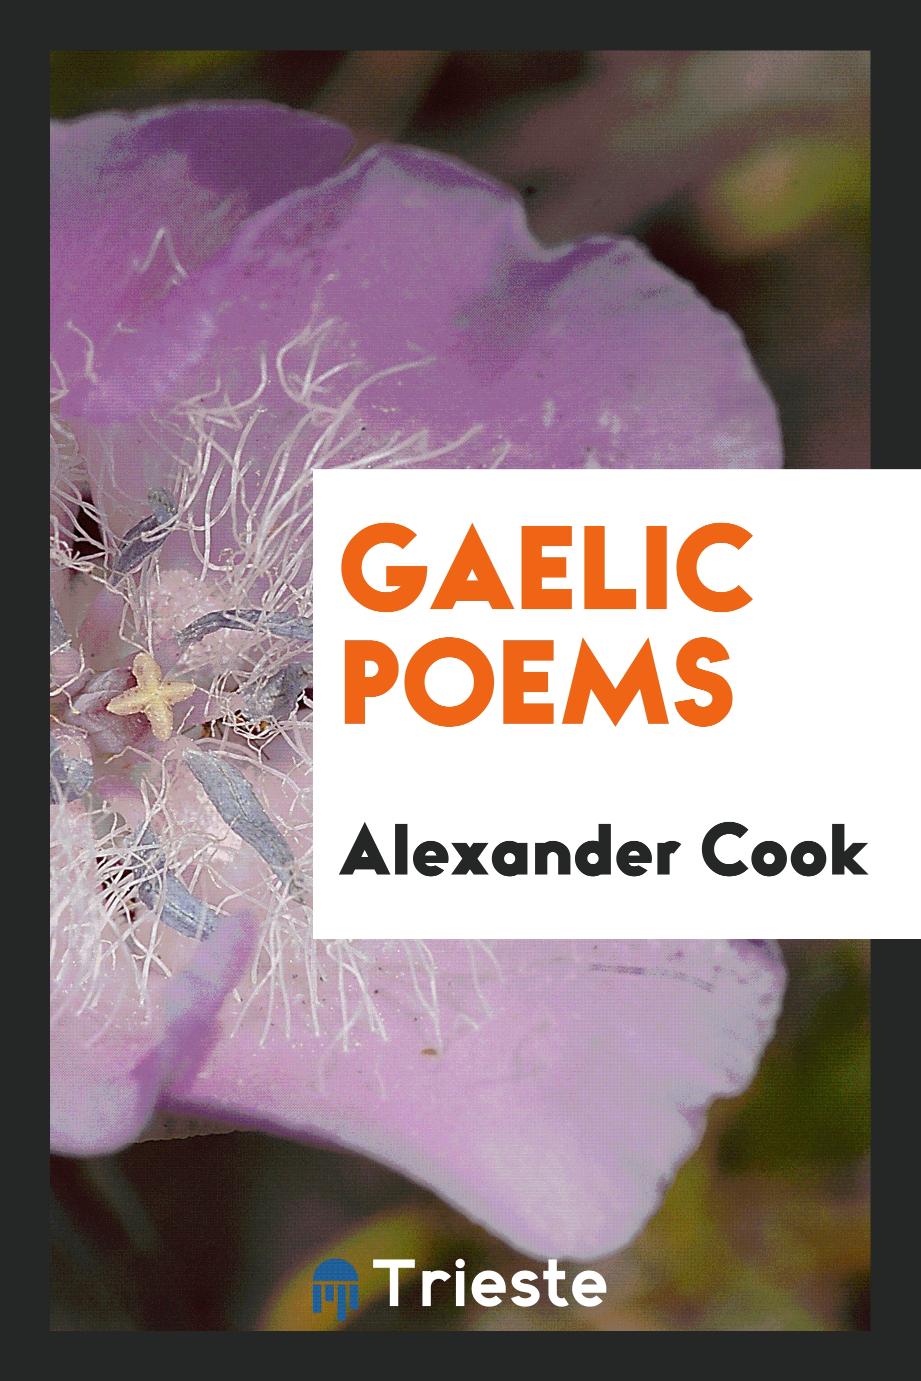 Gaelic poems